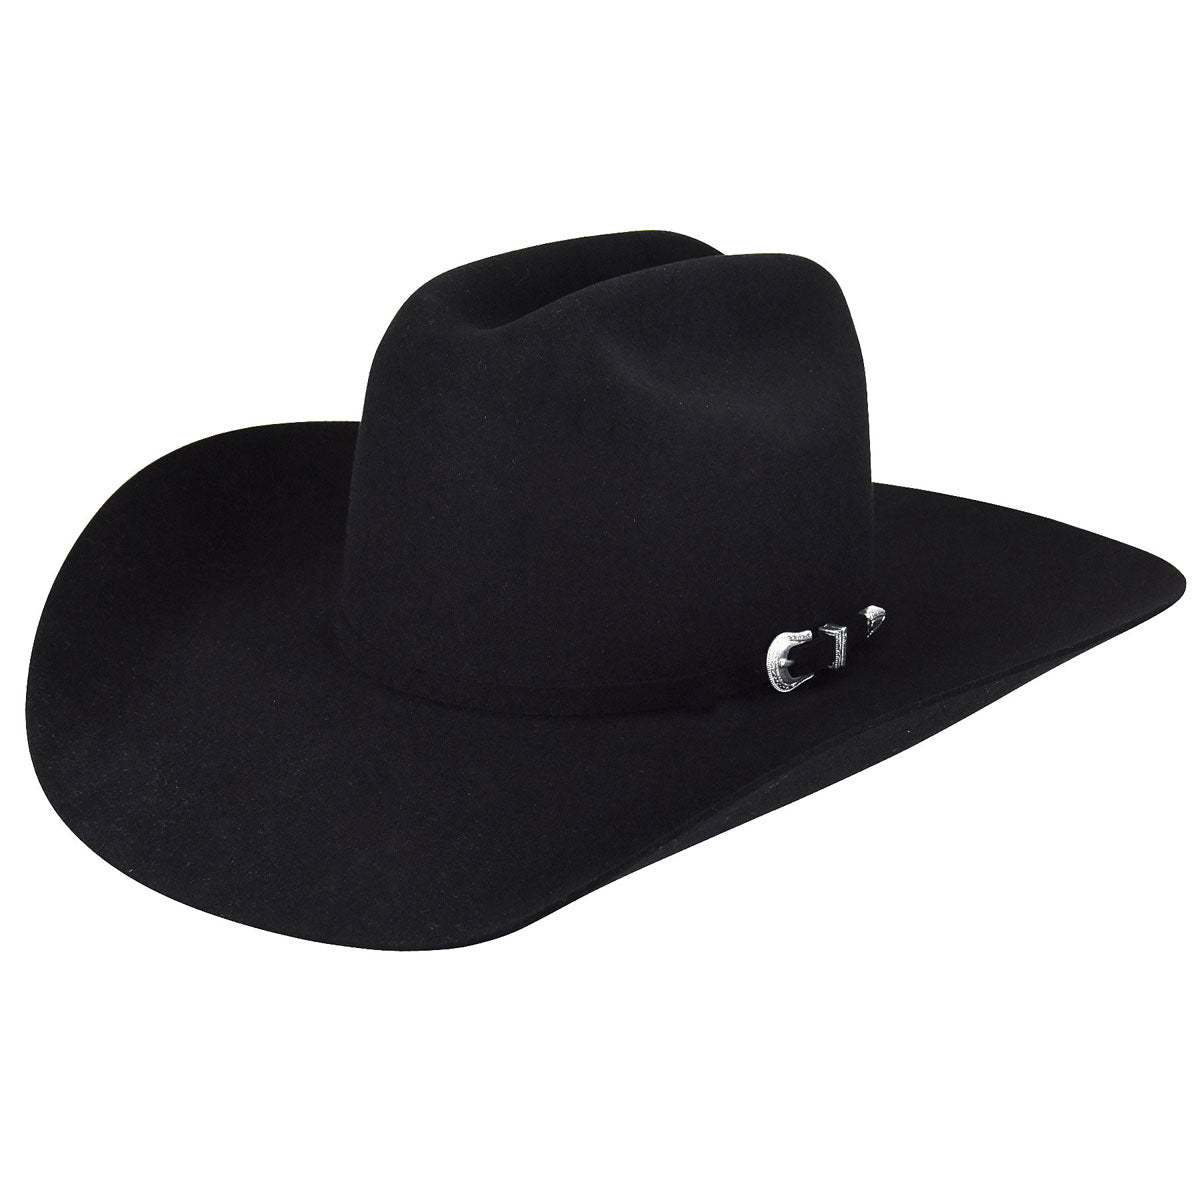 Billy's Western Wear  Cowboy Boots, Hats, & Western Wear